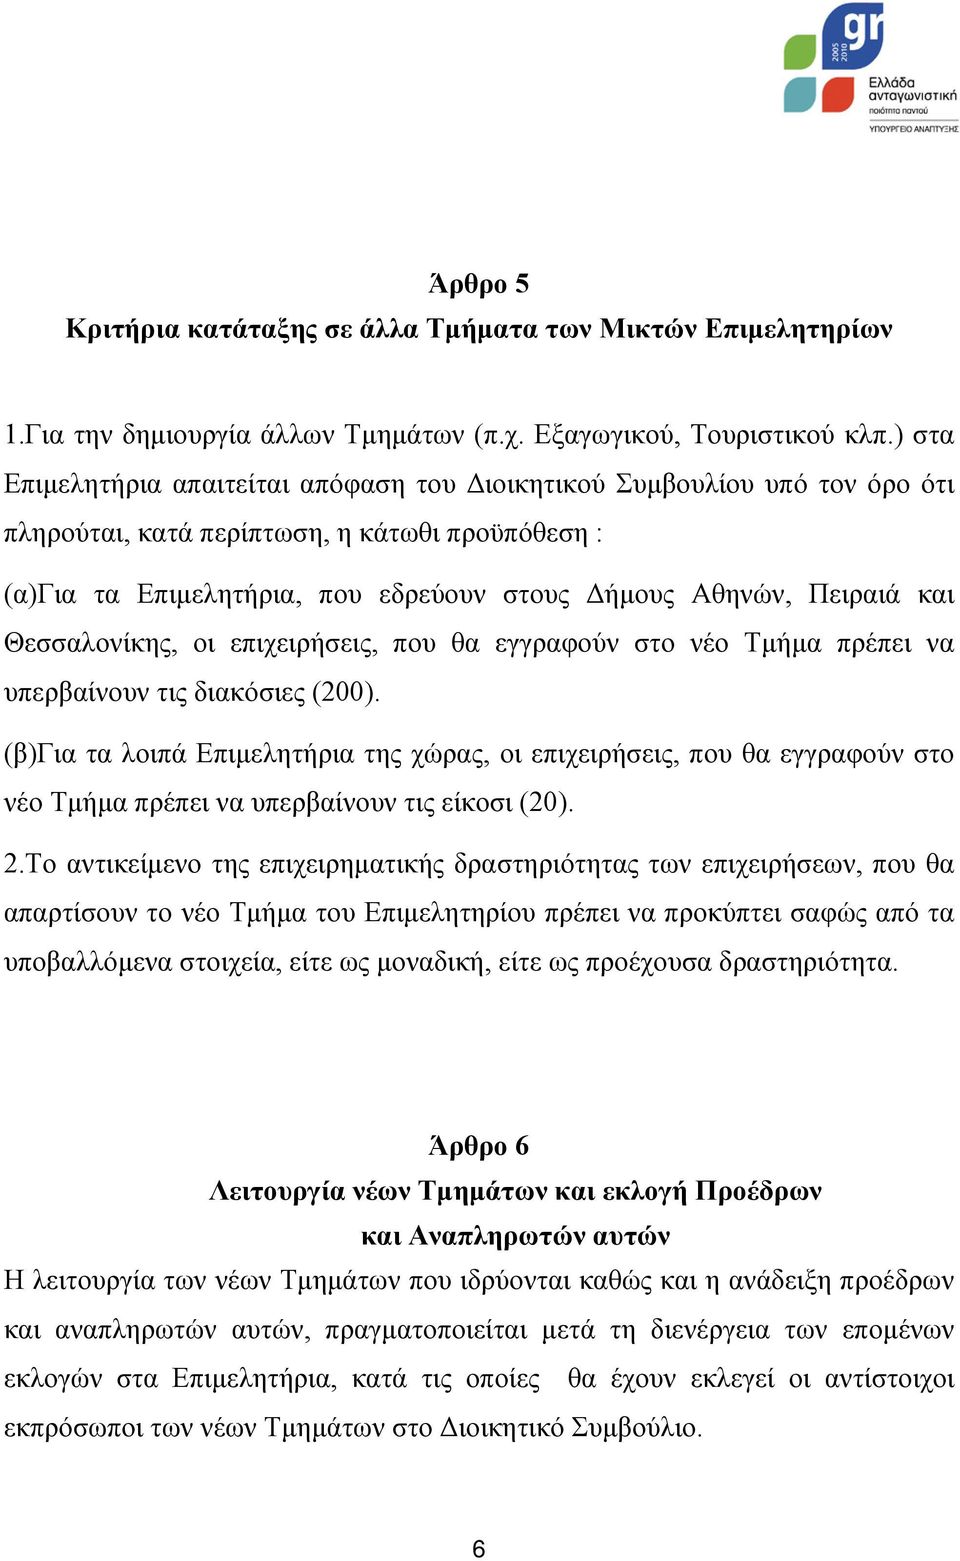 Θεσσαλονίκης, οι επιχειρήσεις, που θα εγγραφούν στο νέο Τμήμα πρέπει να υπερβαίνουν τις διακόσιες (200).